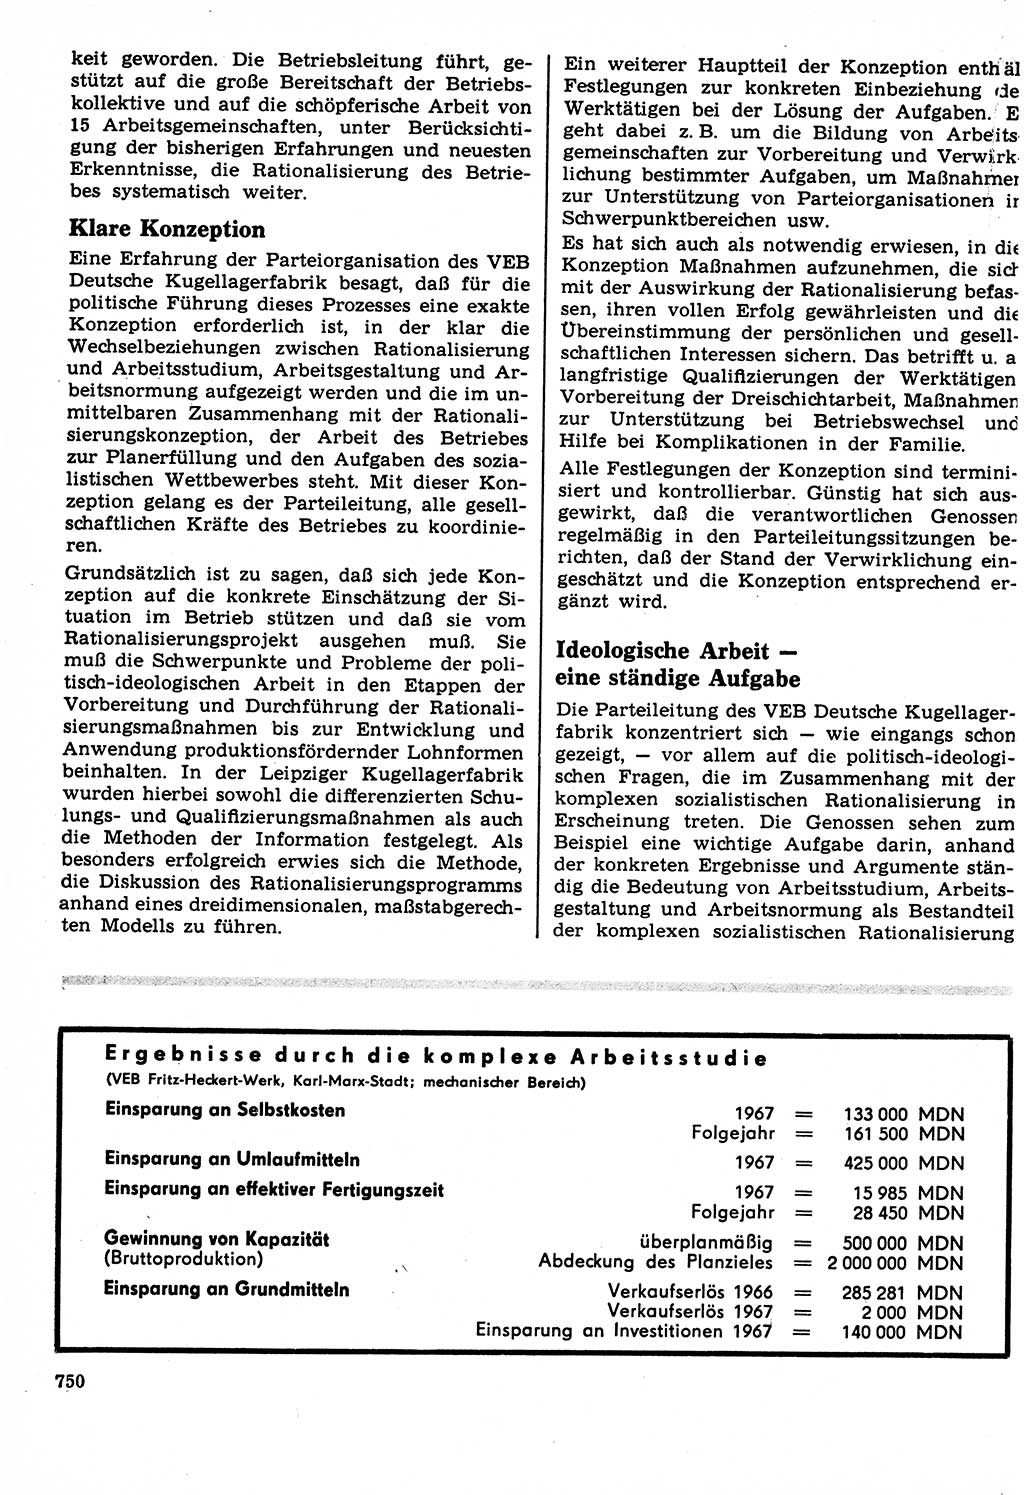 Neuer Weg (NW), Organ des Zentralkomitees (ZK) der SED (Sozialistische Einheitspartei Deutschlands) für Fragen des Parteilebens, 22. Jahrgang [Deutsche Demokratische Republik (DDR)] 1967, Seite 750 (NW ZK SED DDR 1967, S. 750)